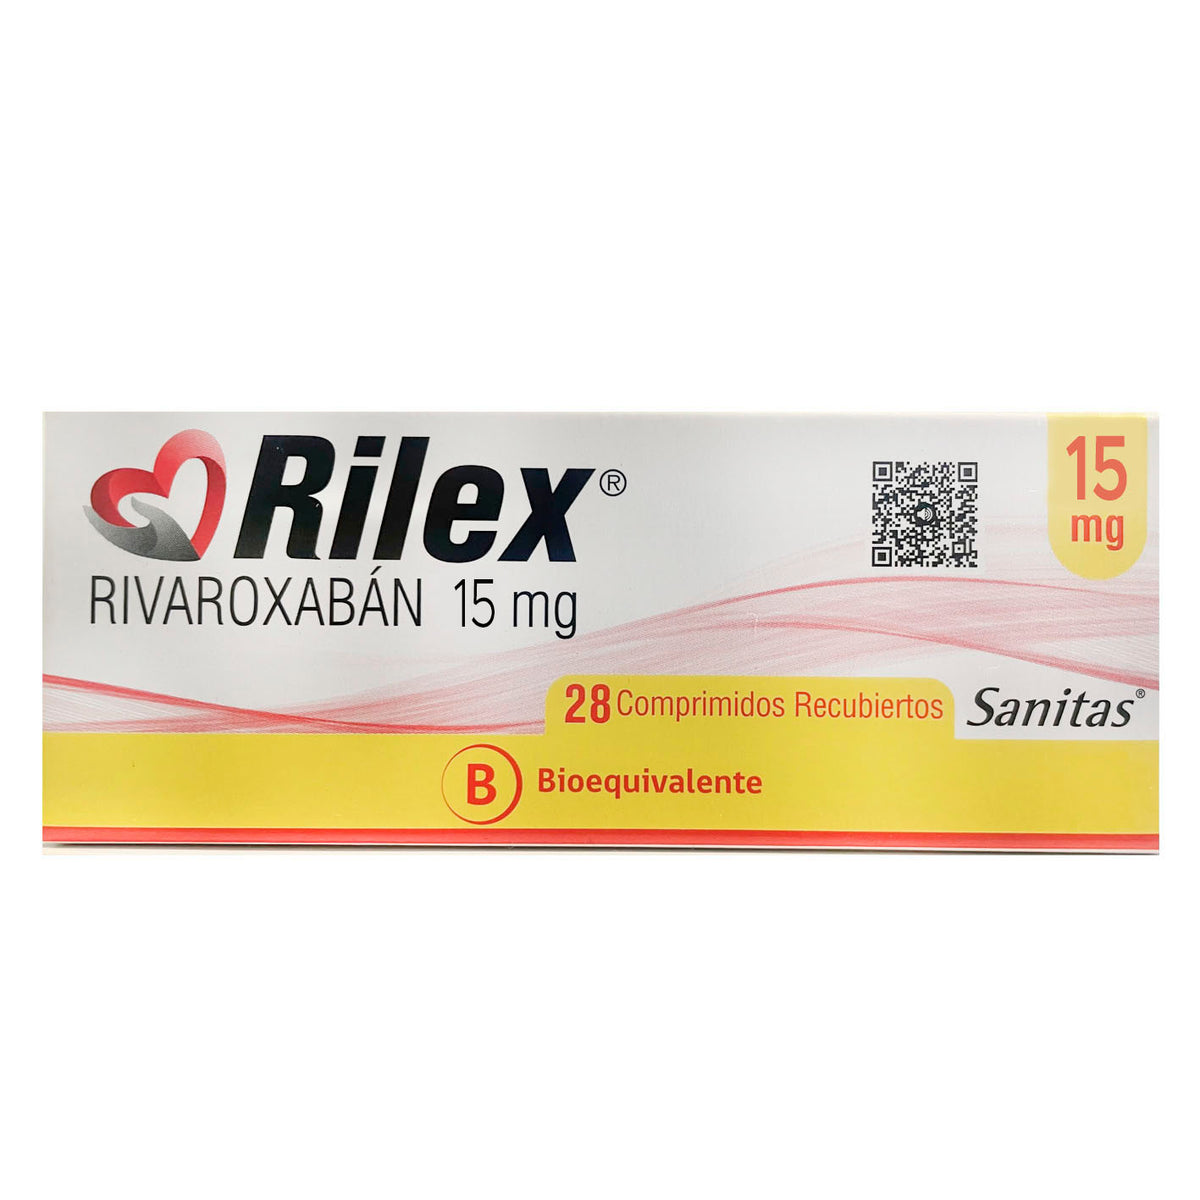 Rilex Comprimidos Recubiertos 15mg